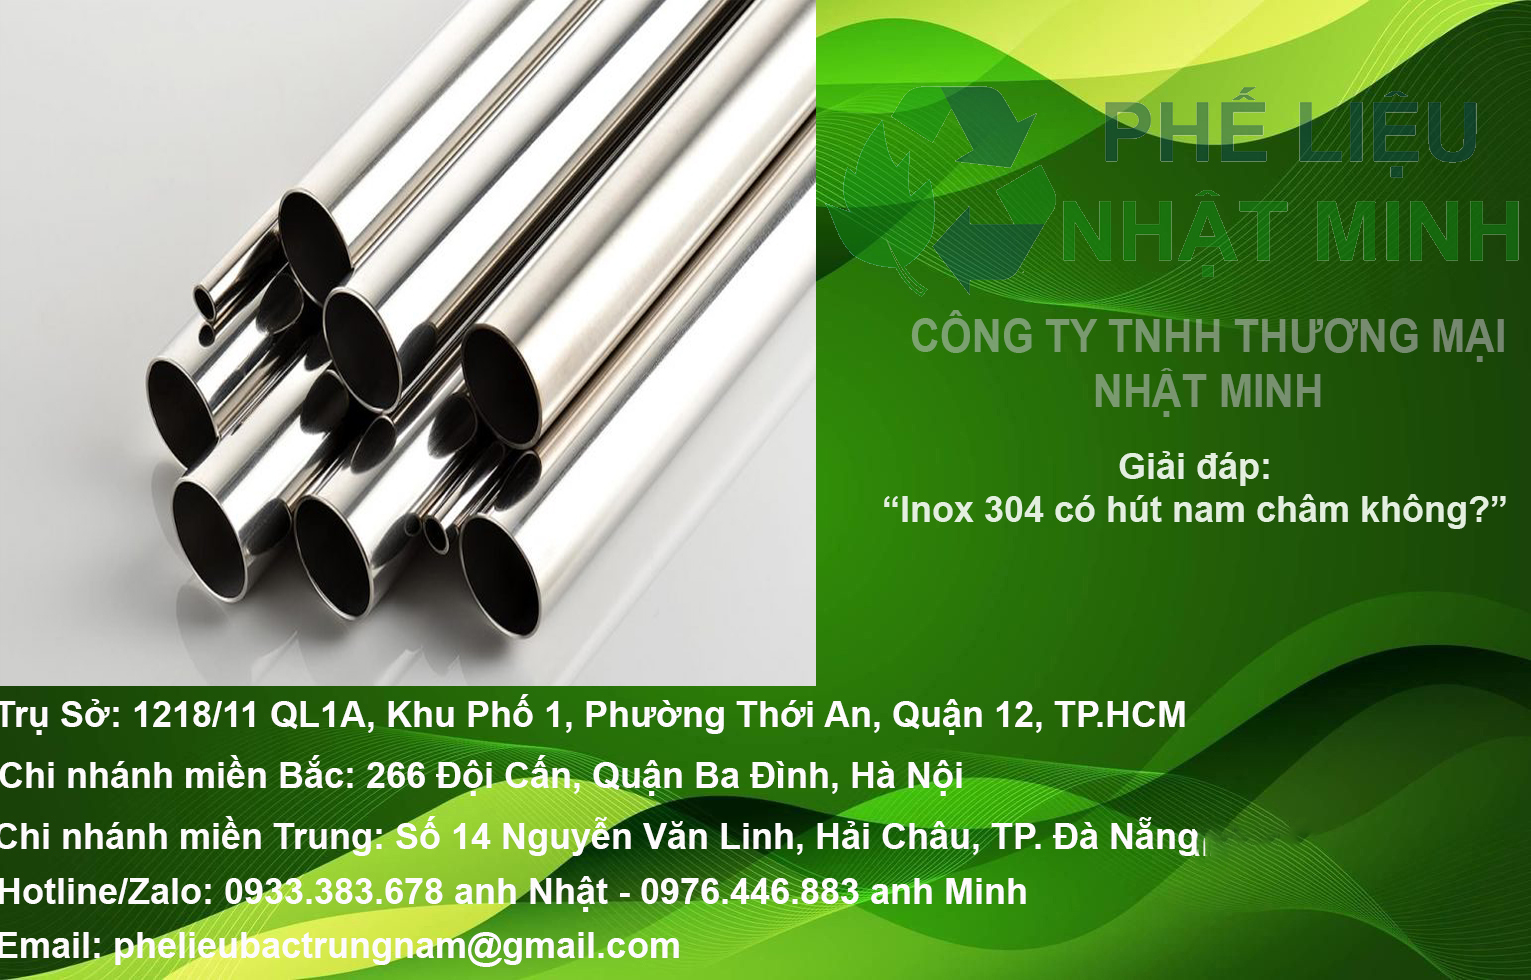 INOX 304 CO HUT NAM CHAM KHONG